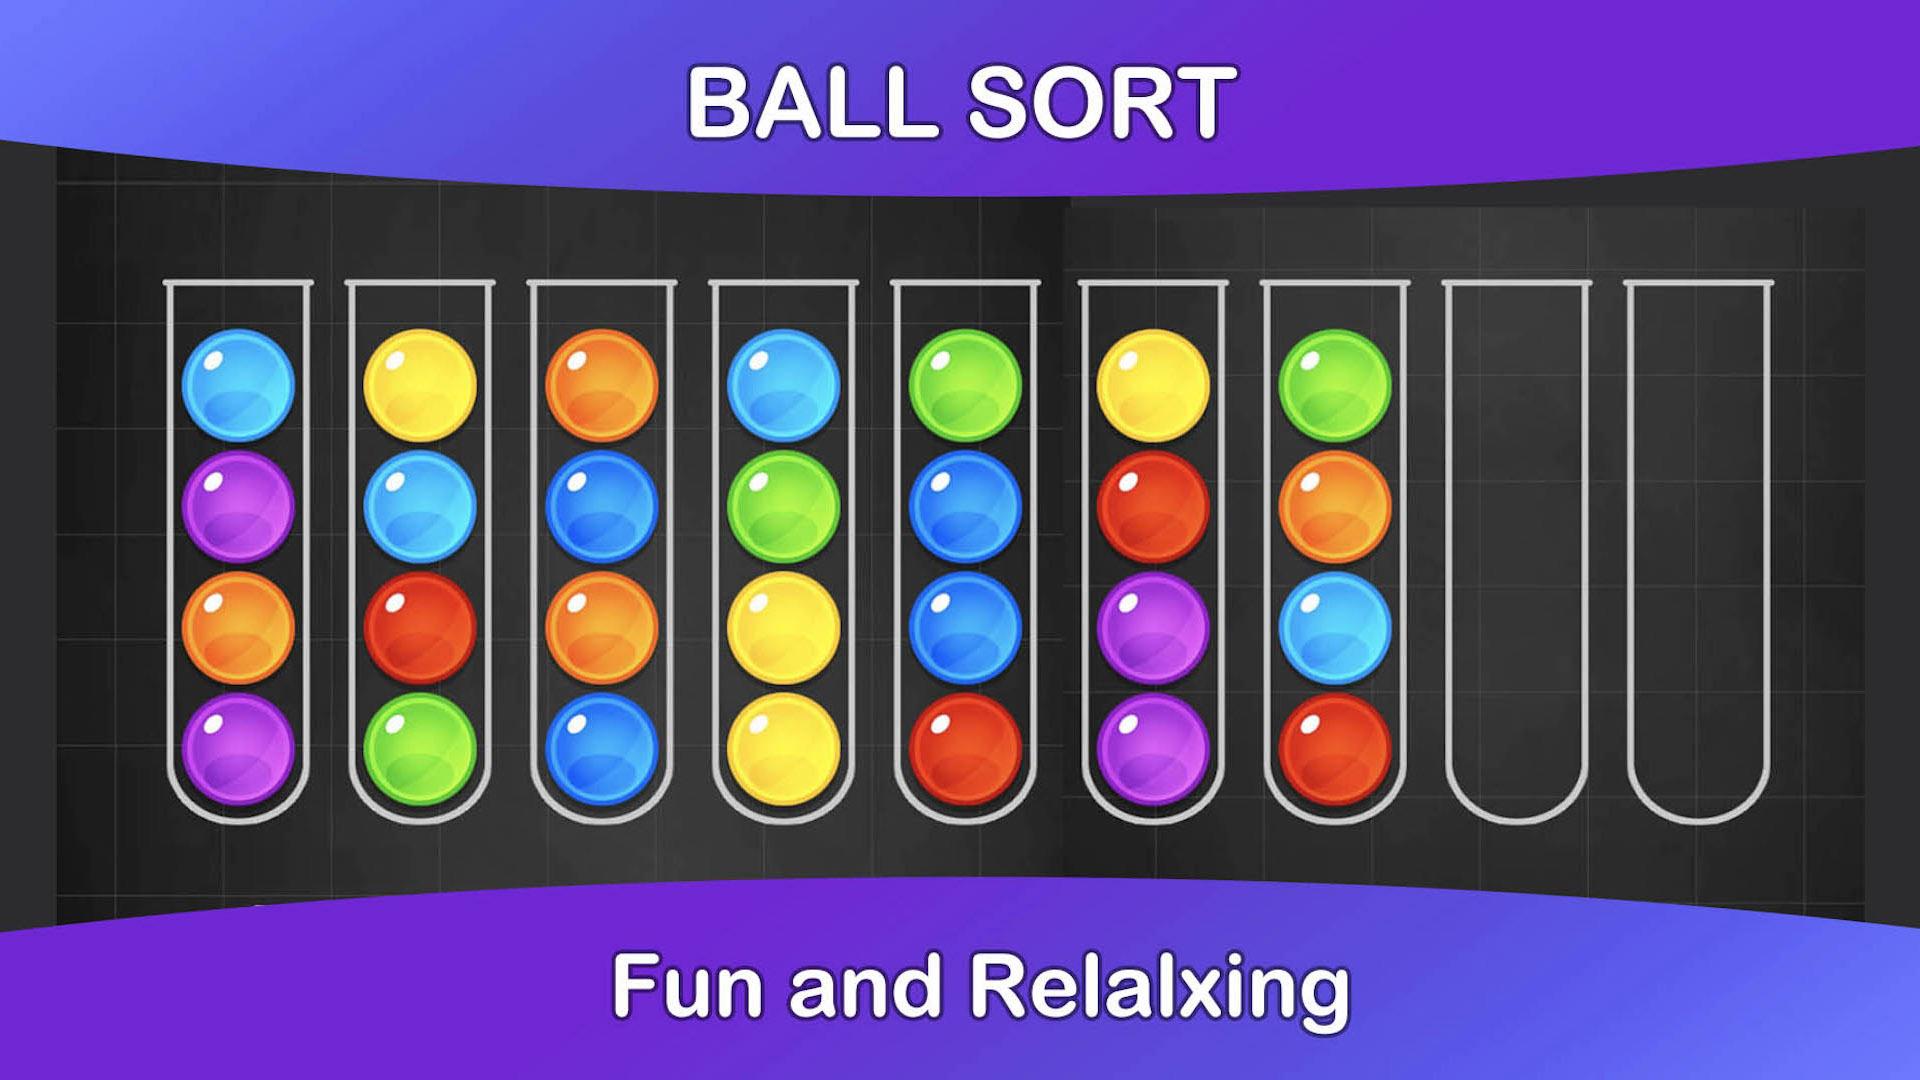 Игра сортировка шариков по цветам в колбах